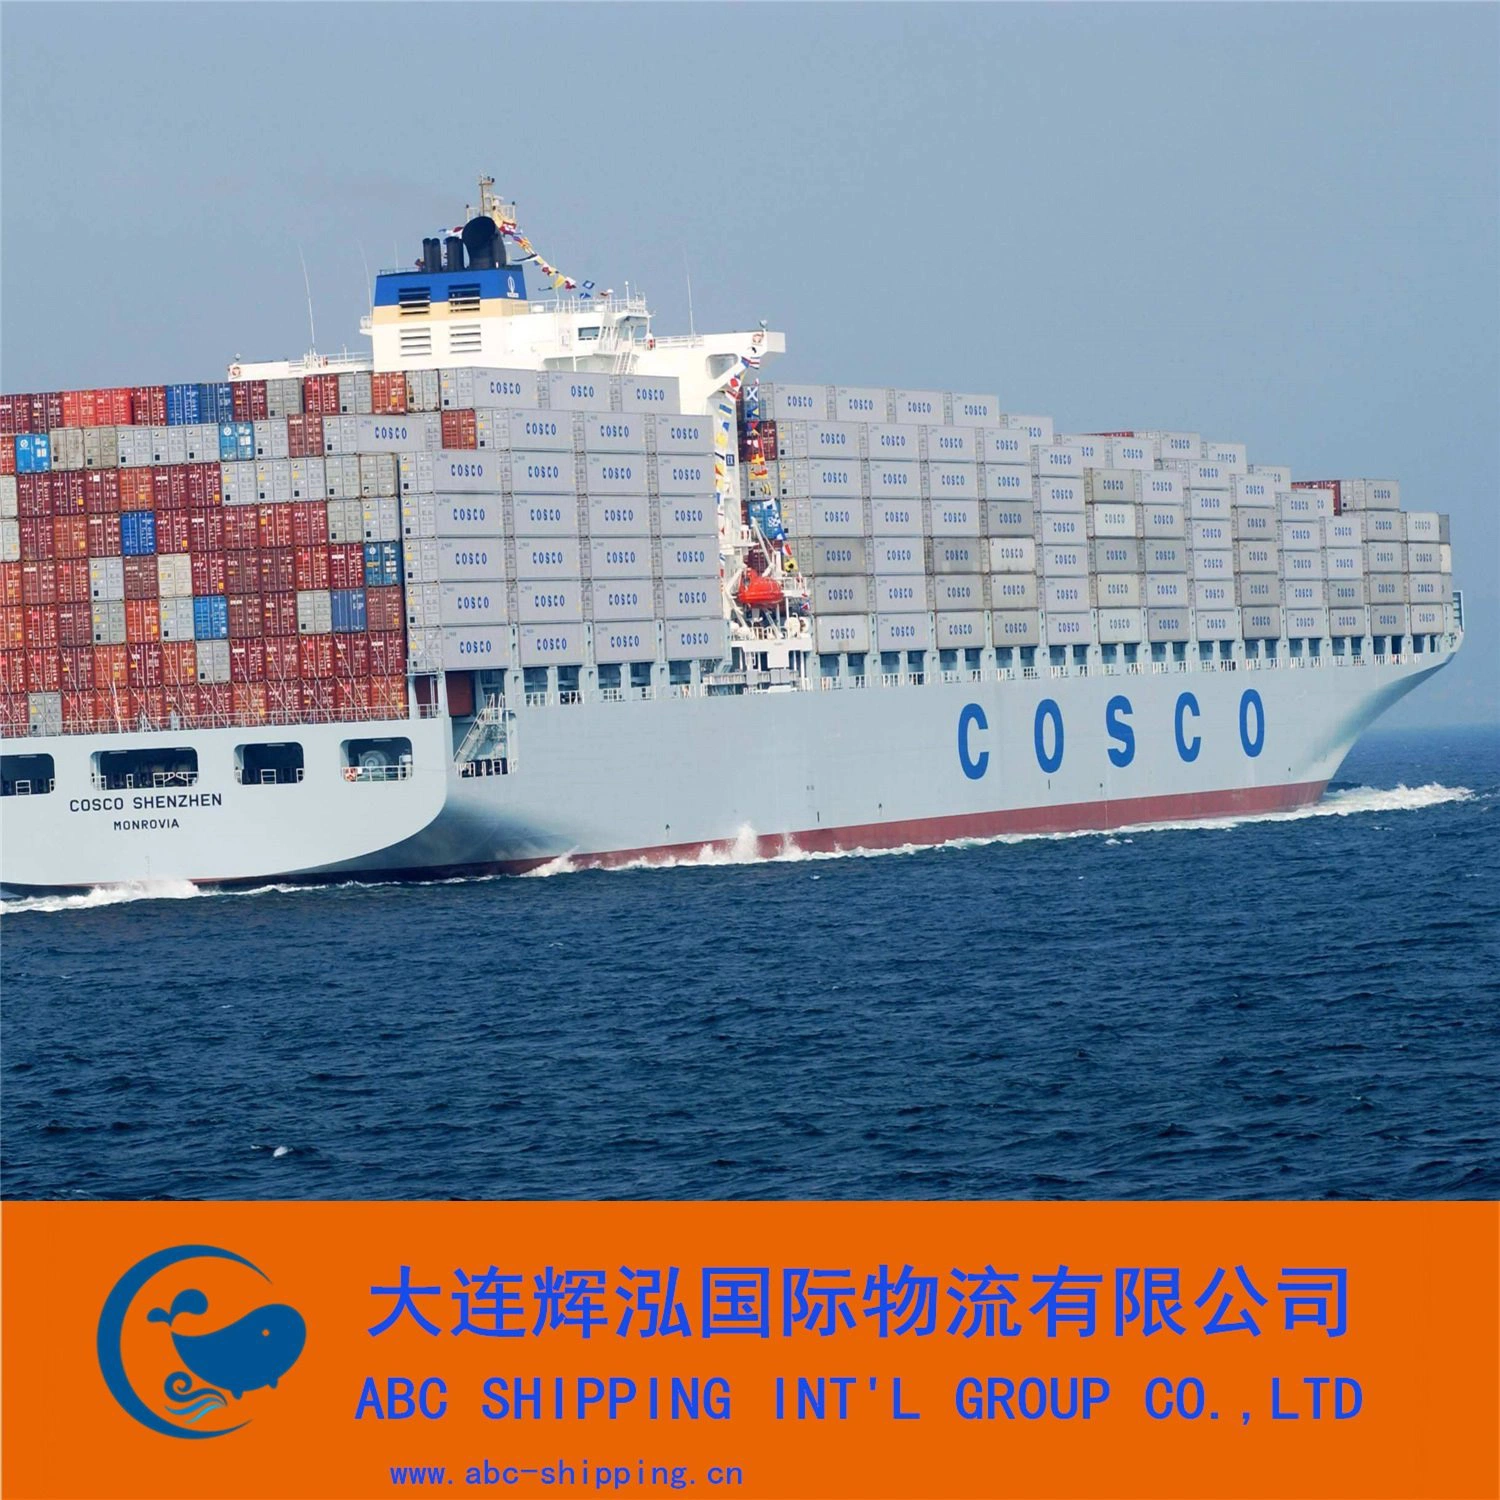 Les services de logistique internationale se concentrent sur les marchandises maritimes